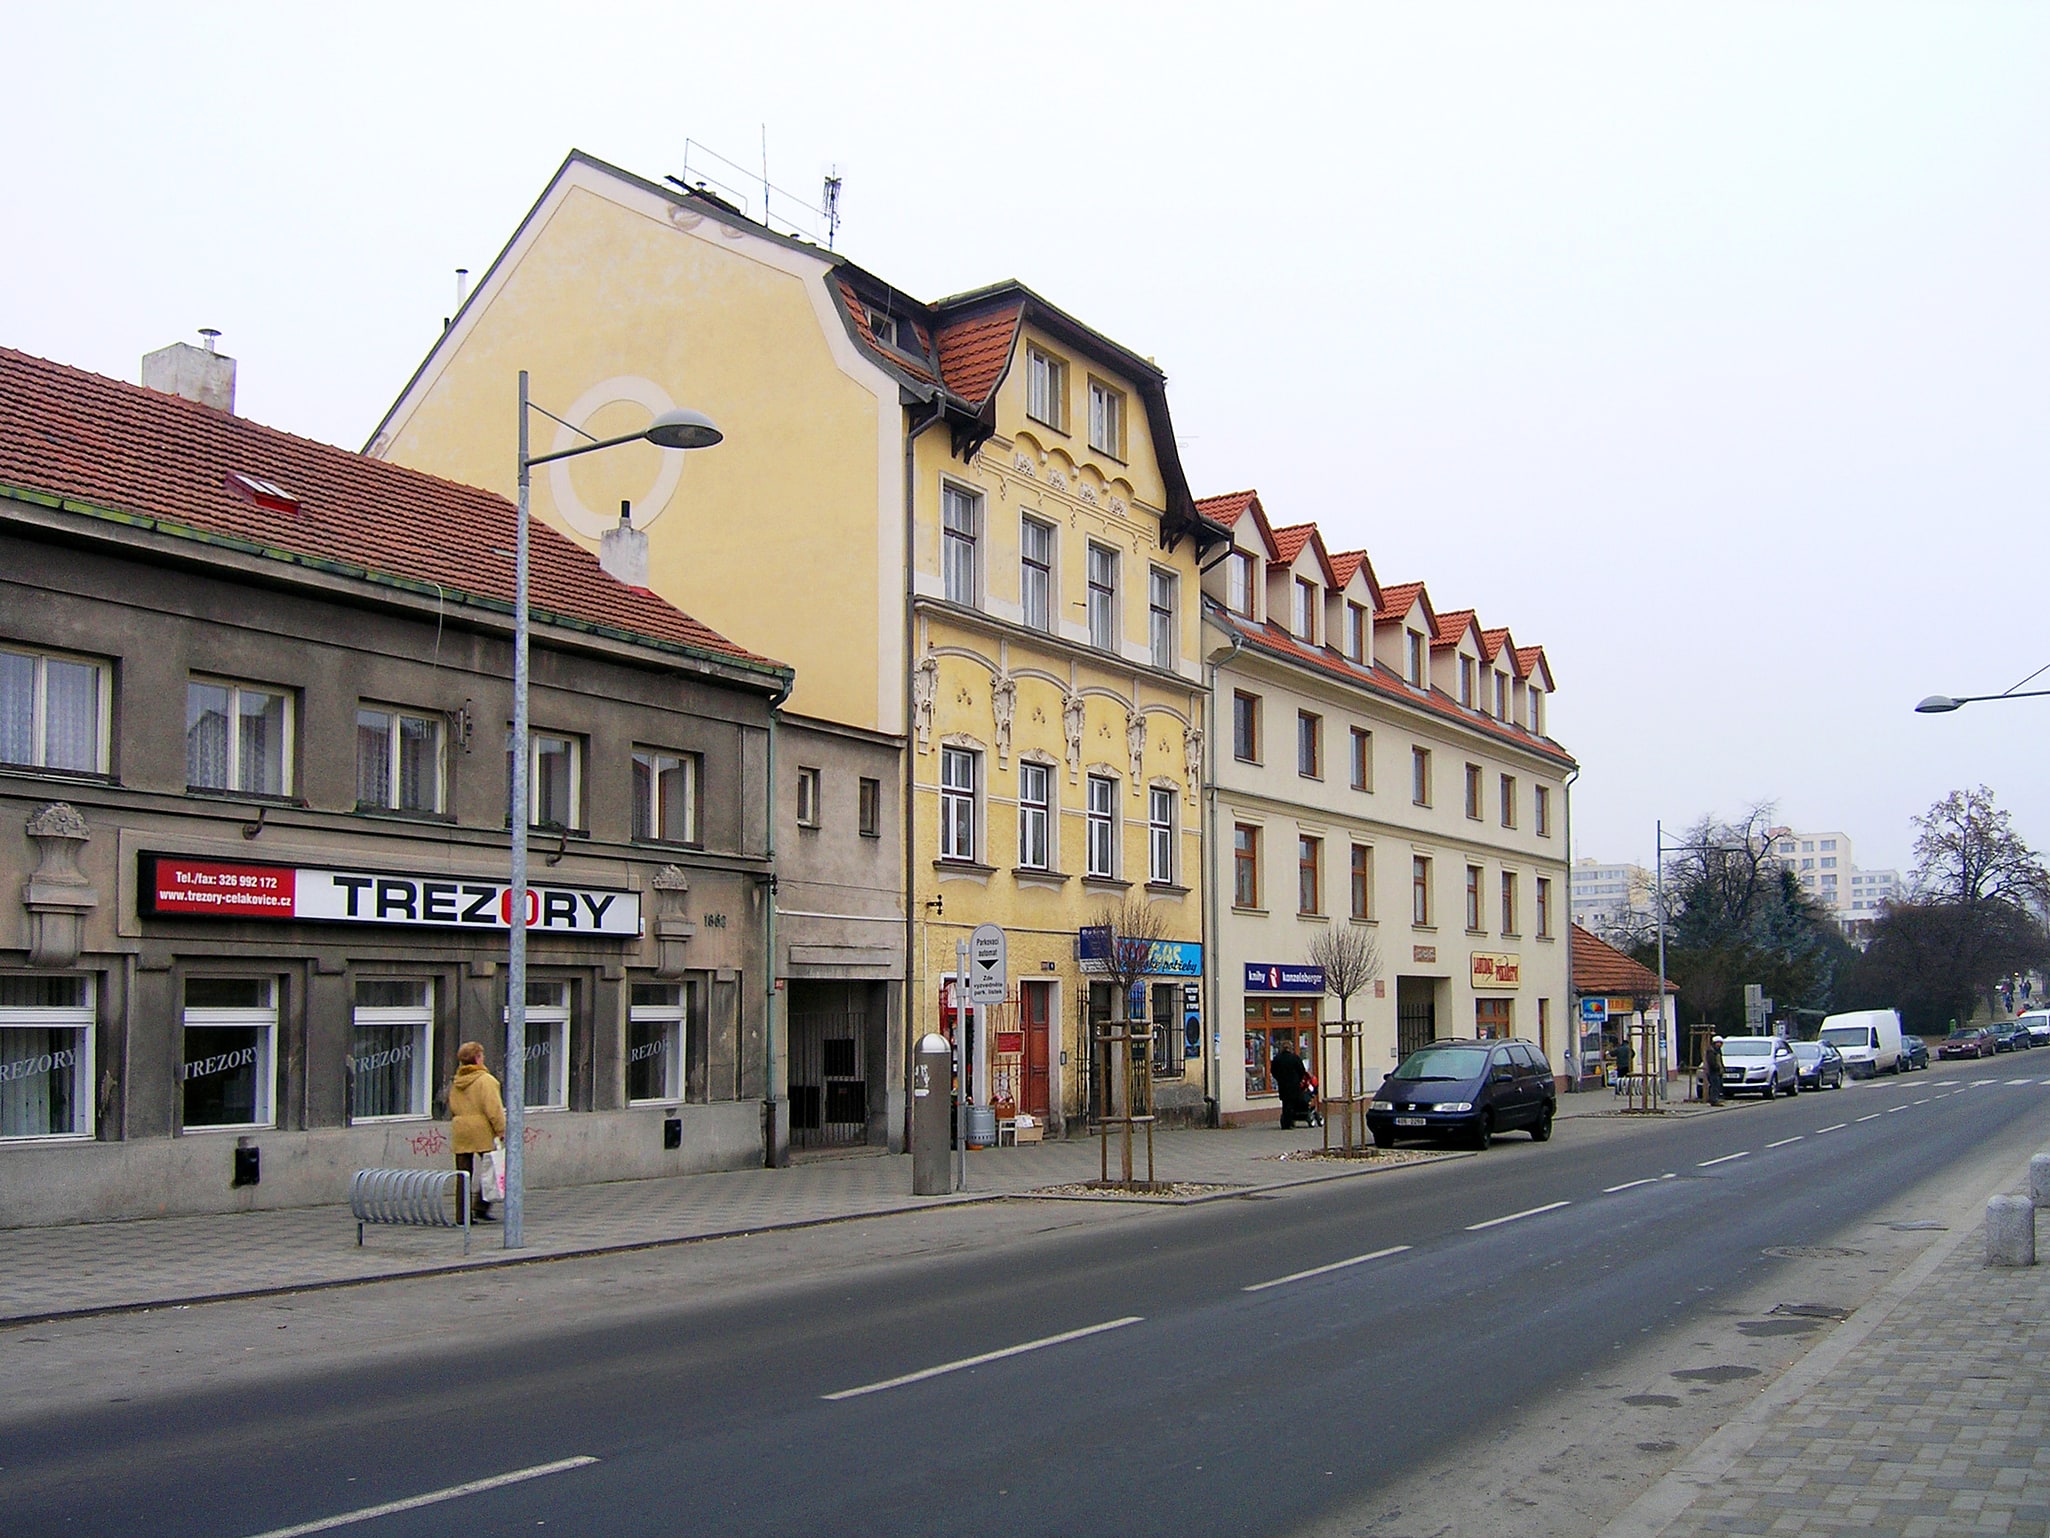 Čelákovice, Czechy